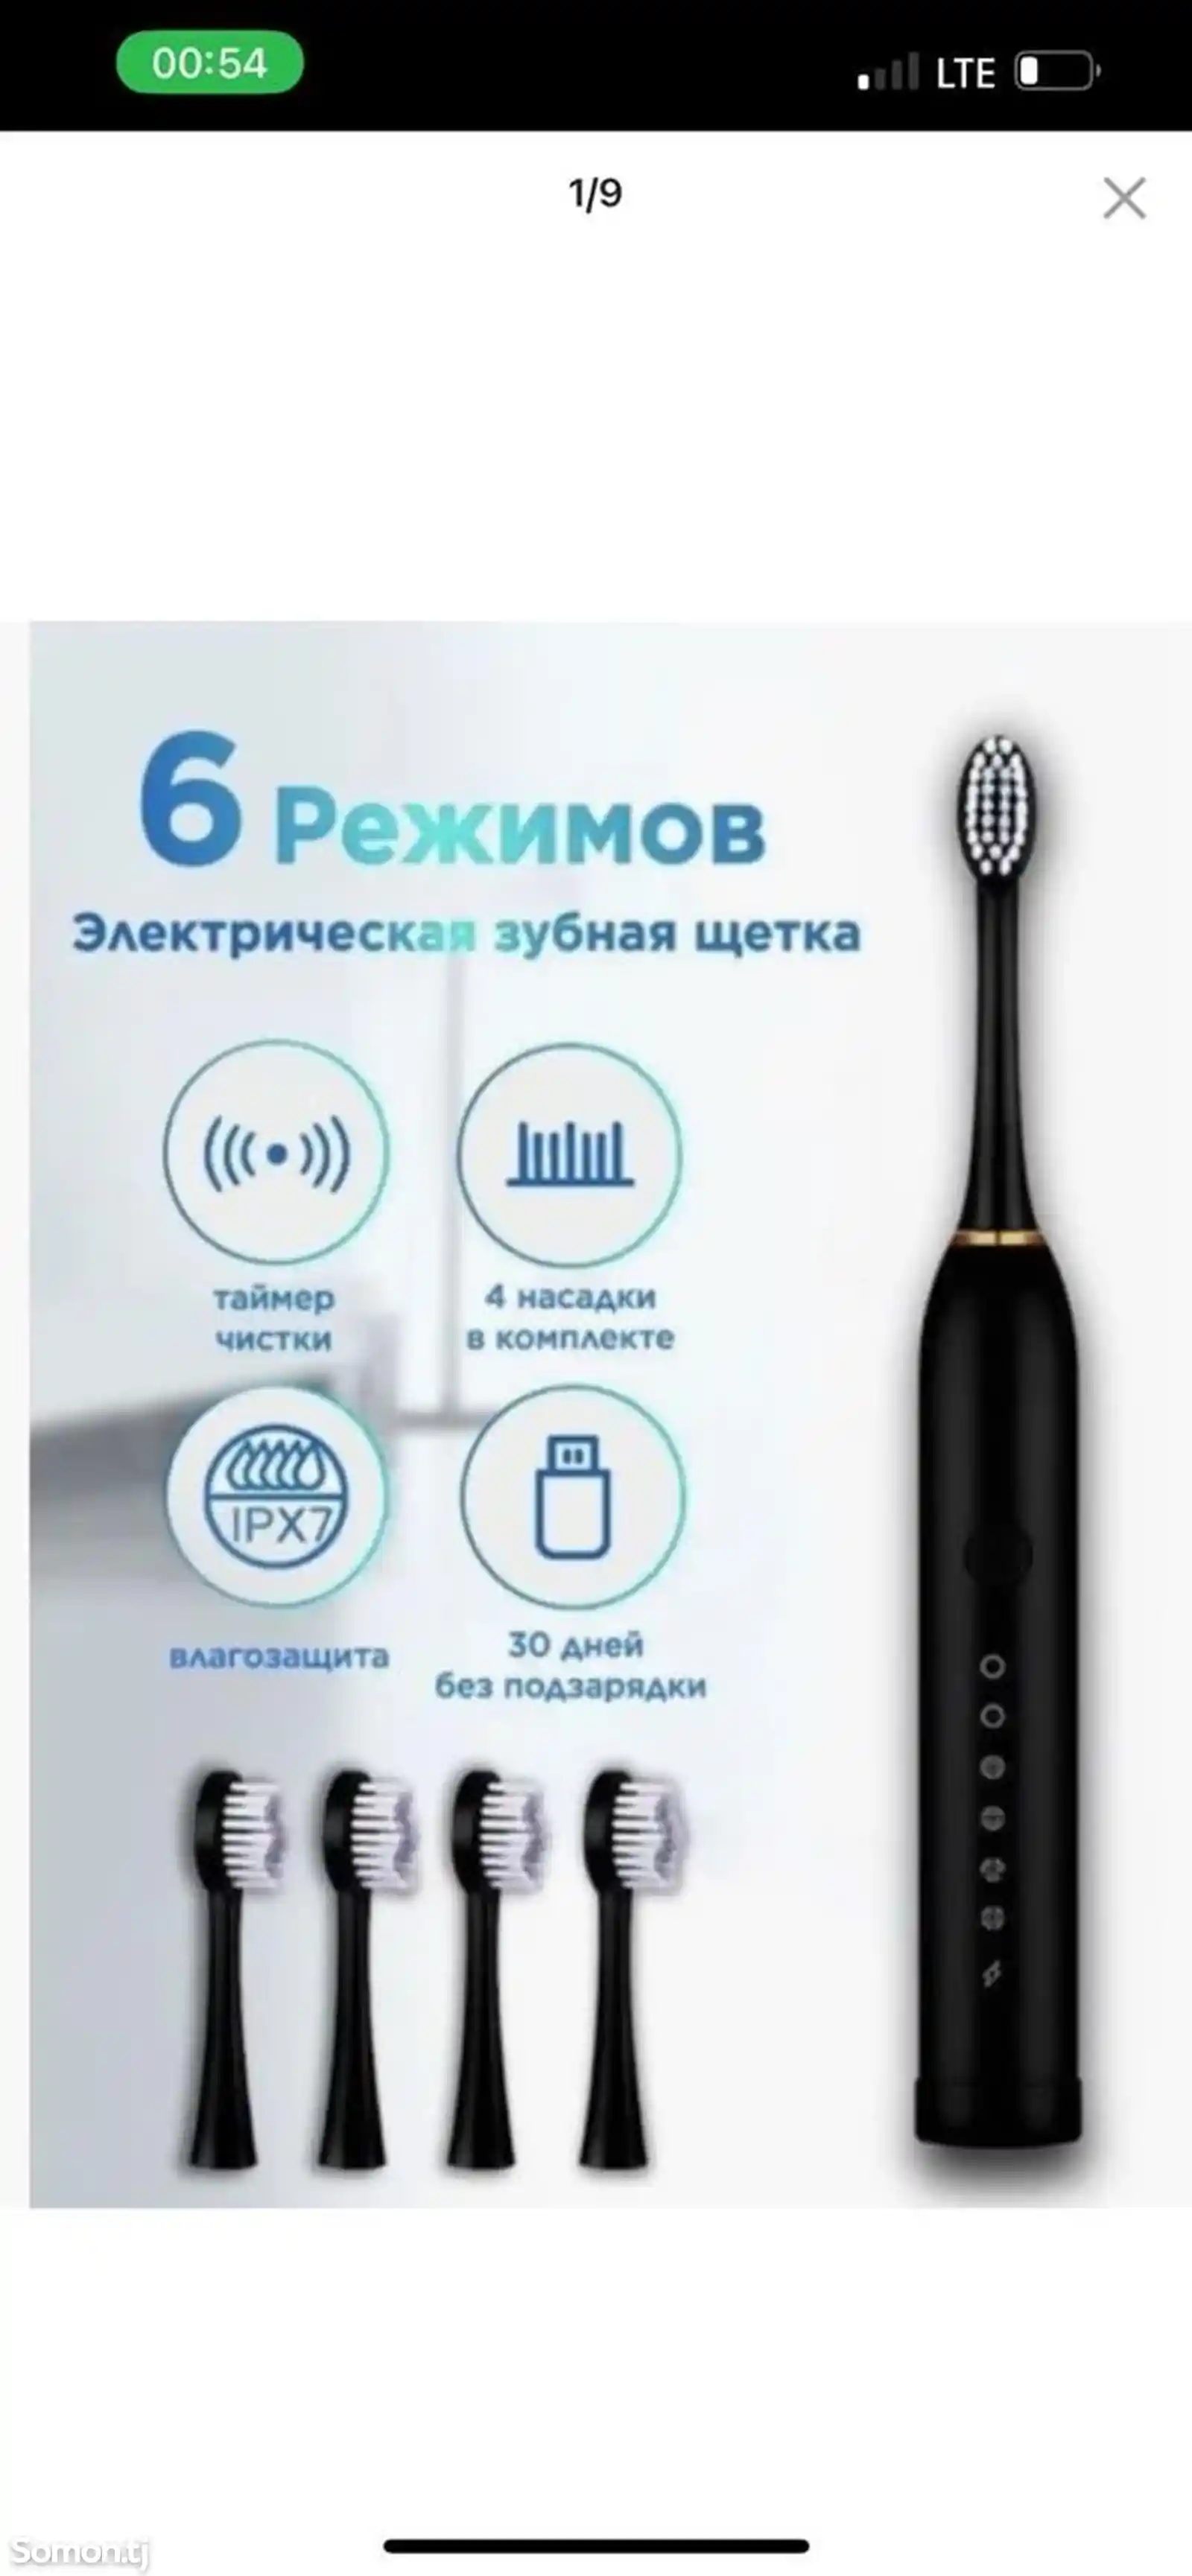 Электроная зубная щётка-6